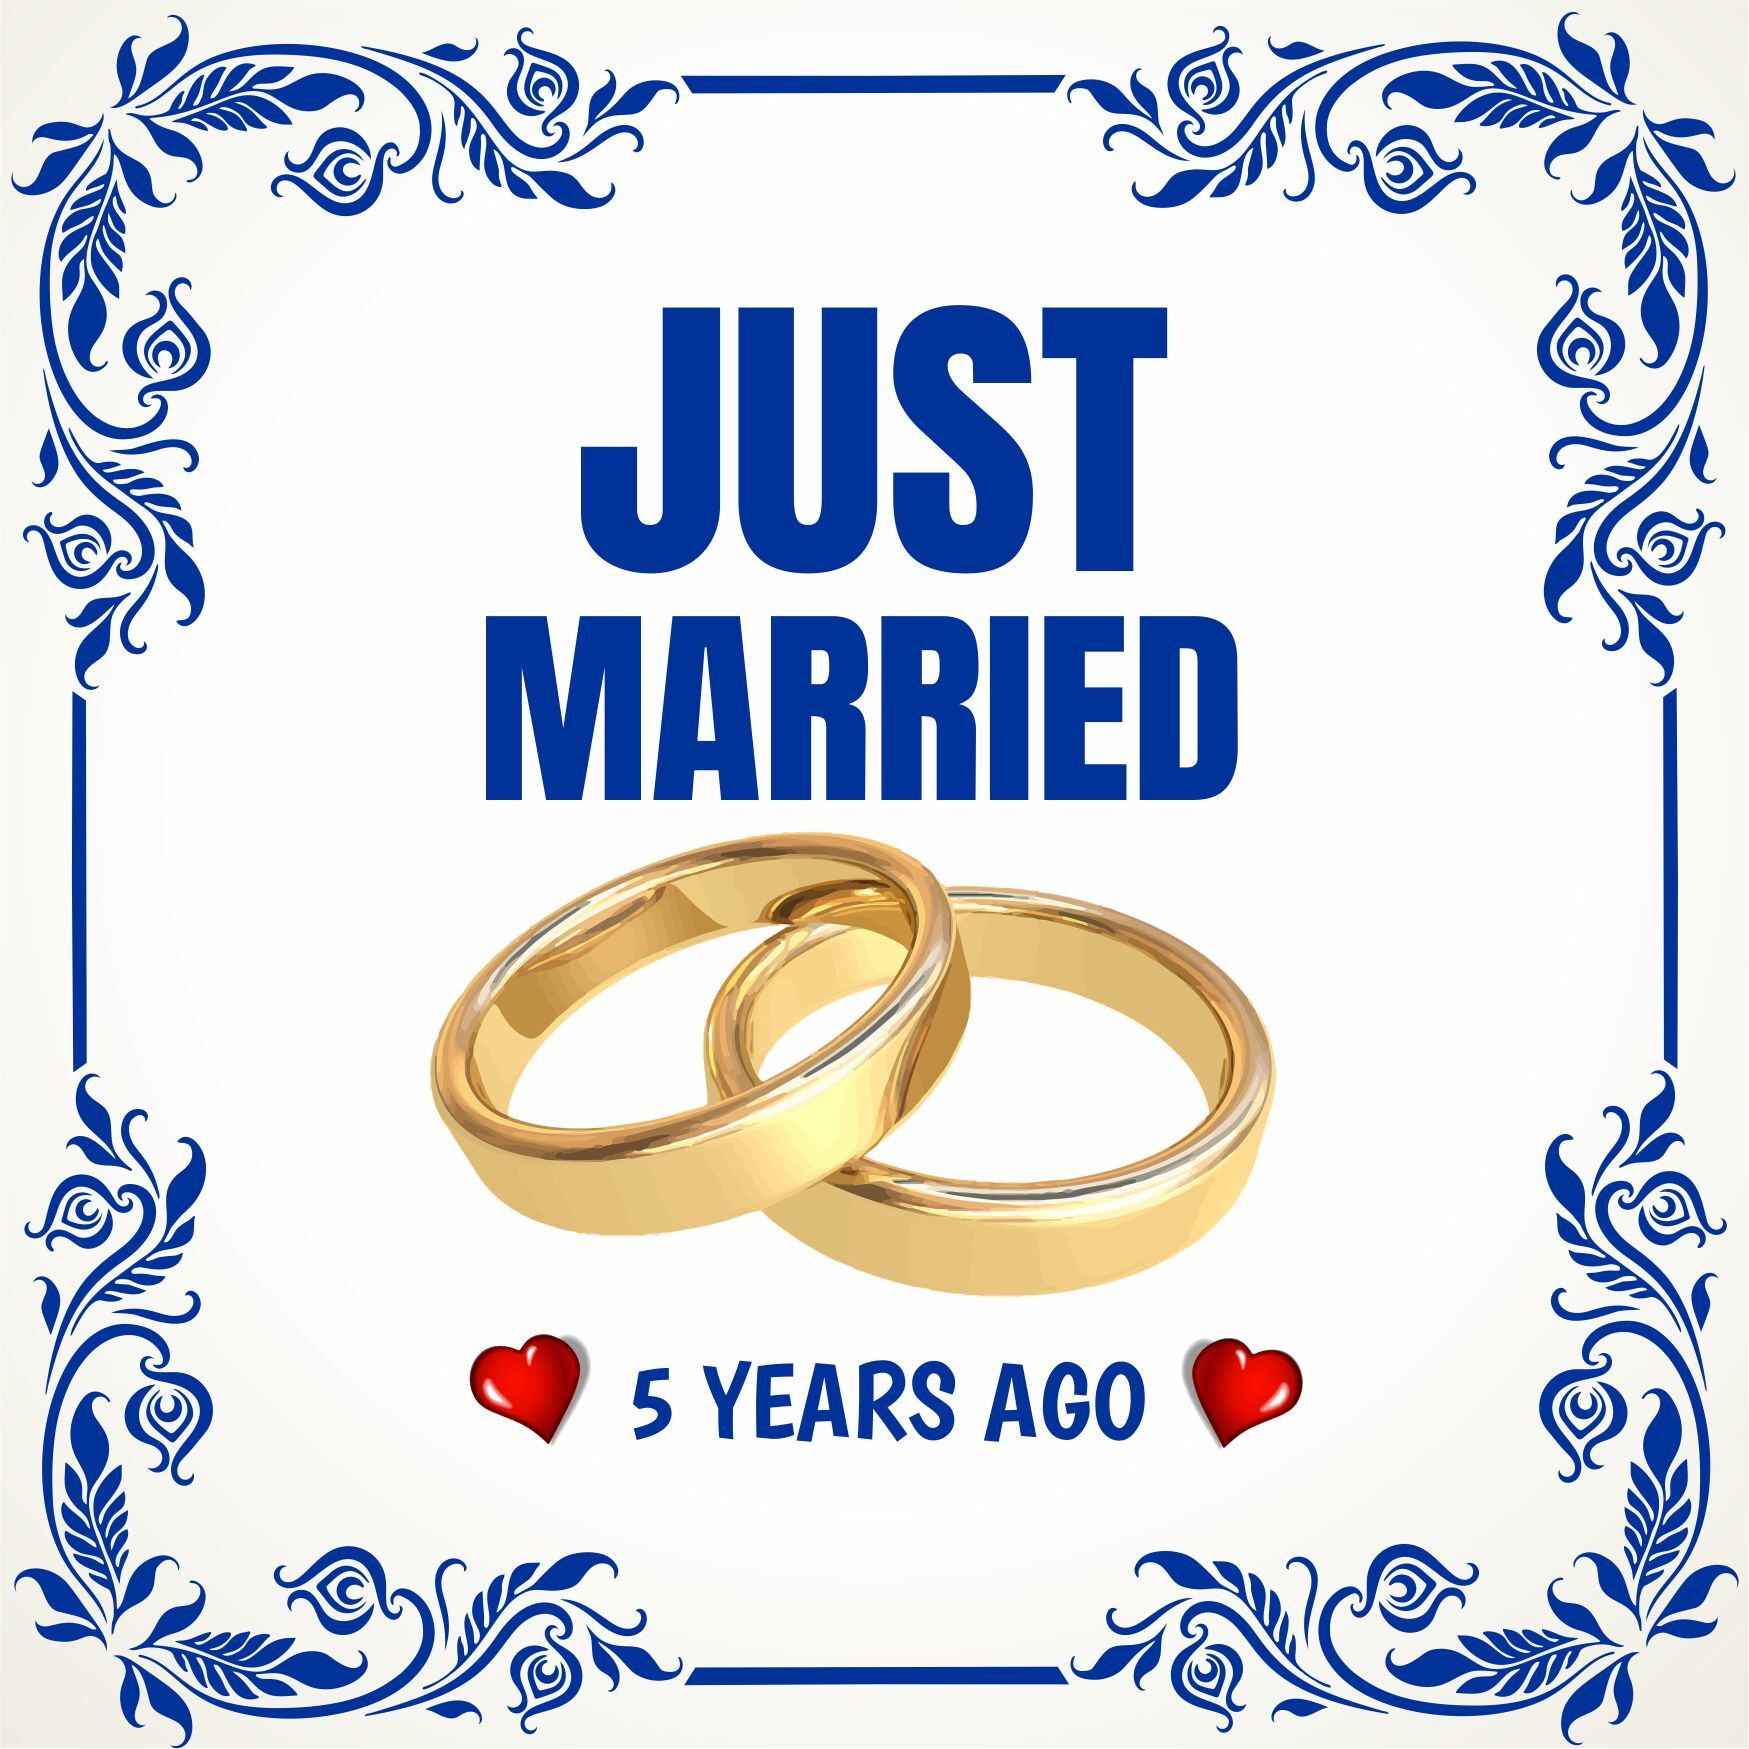 Tegel just married 5 years ago pas getrouwd 5 jaar geleden